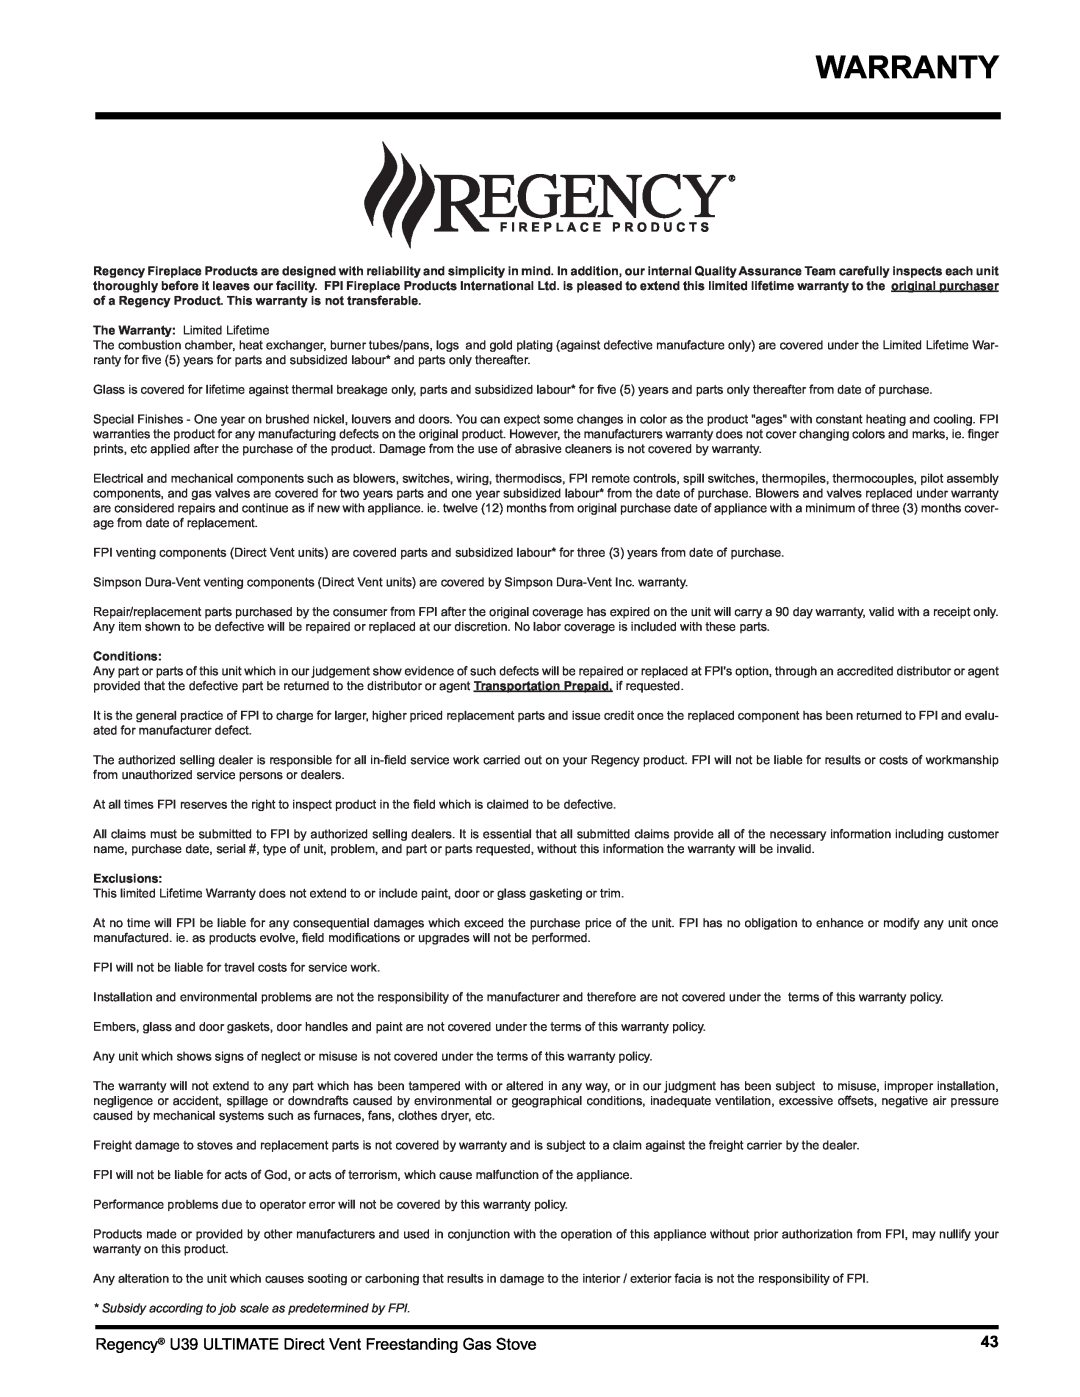 Regency U39-NG1, U39-LP1 installation manual Warranty, Conditions, Exclusions 